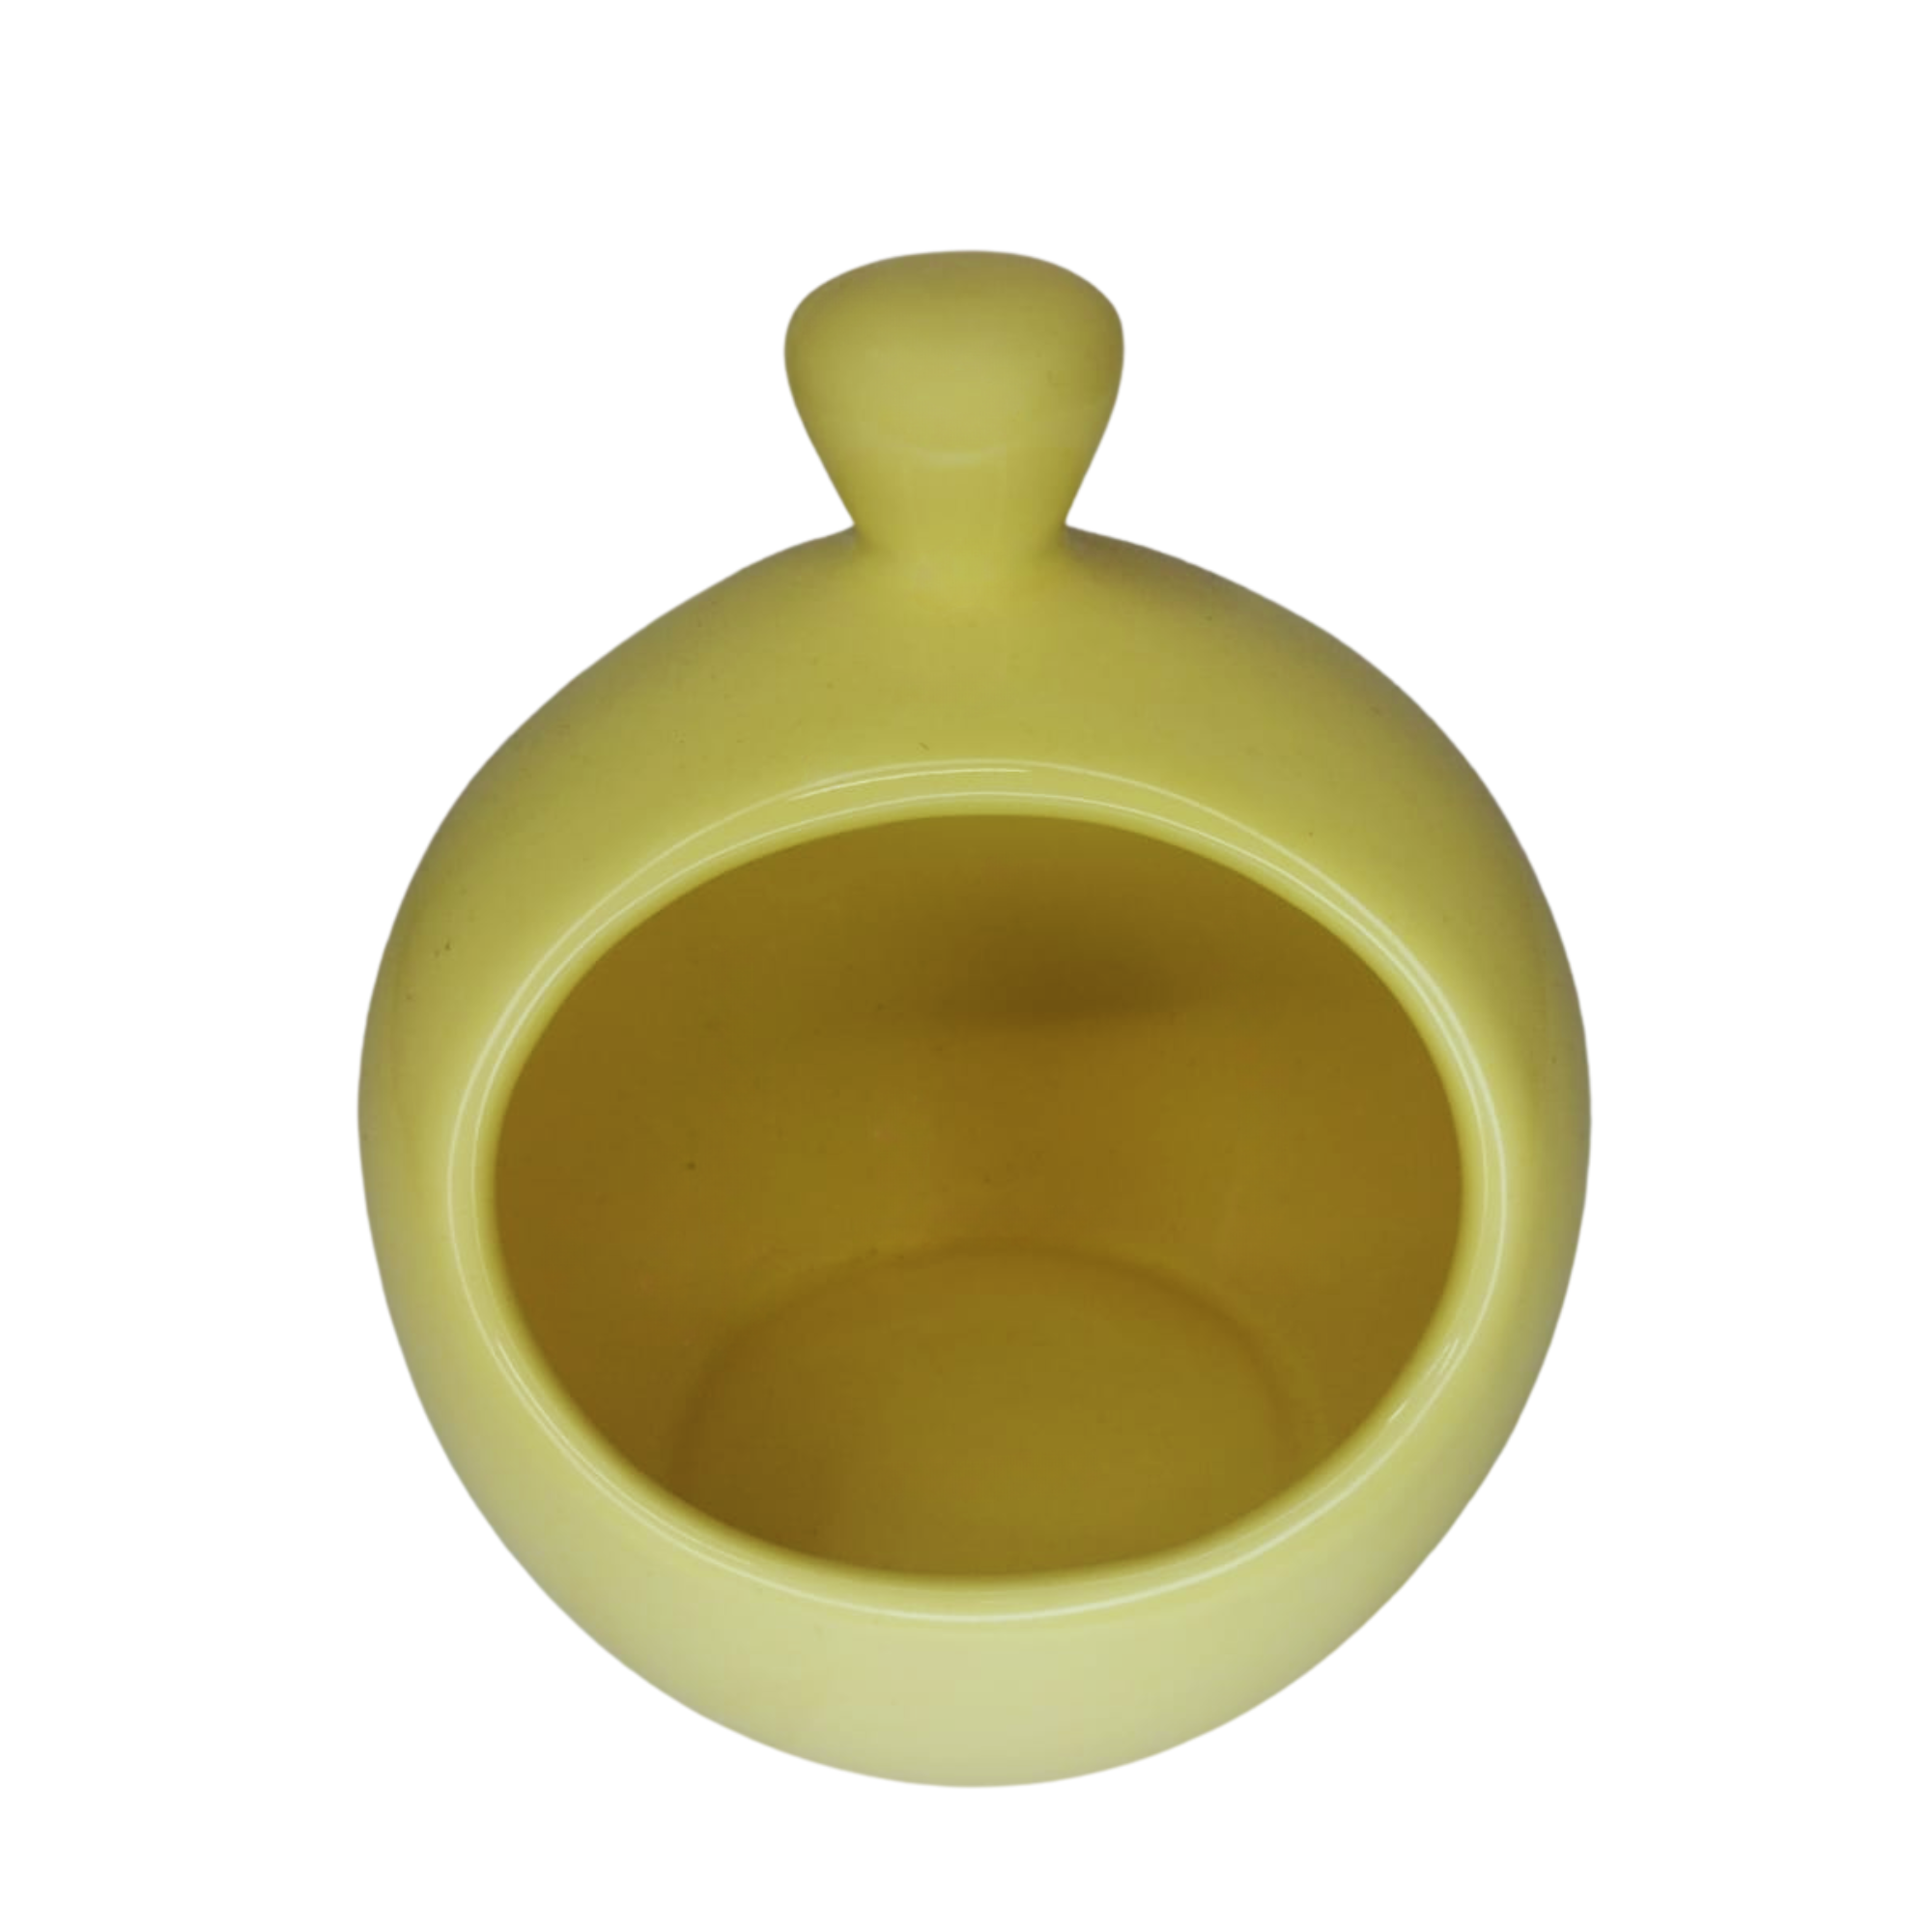 Porta Alho de Cerâmica - Um Toque de Charme e Praticidade para Sua Cozinha!:amarelo - 1